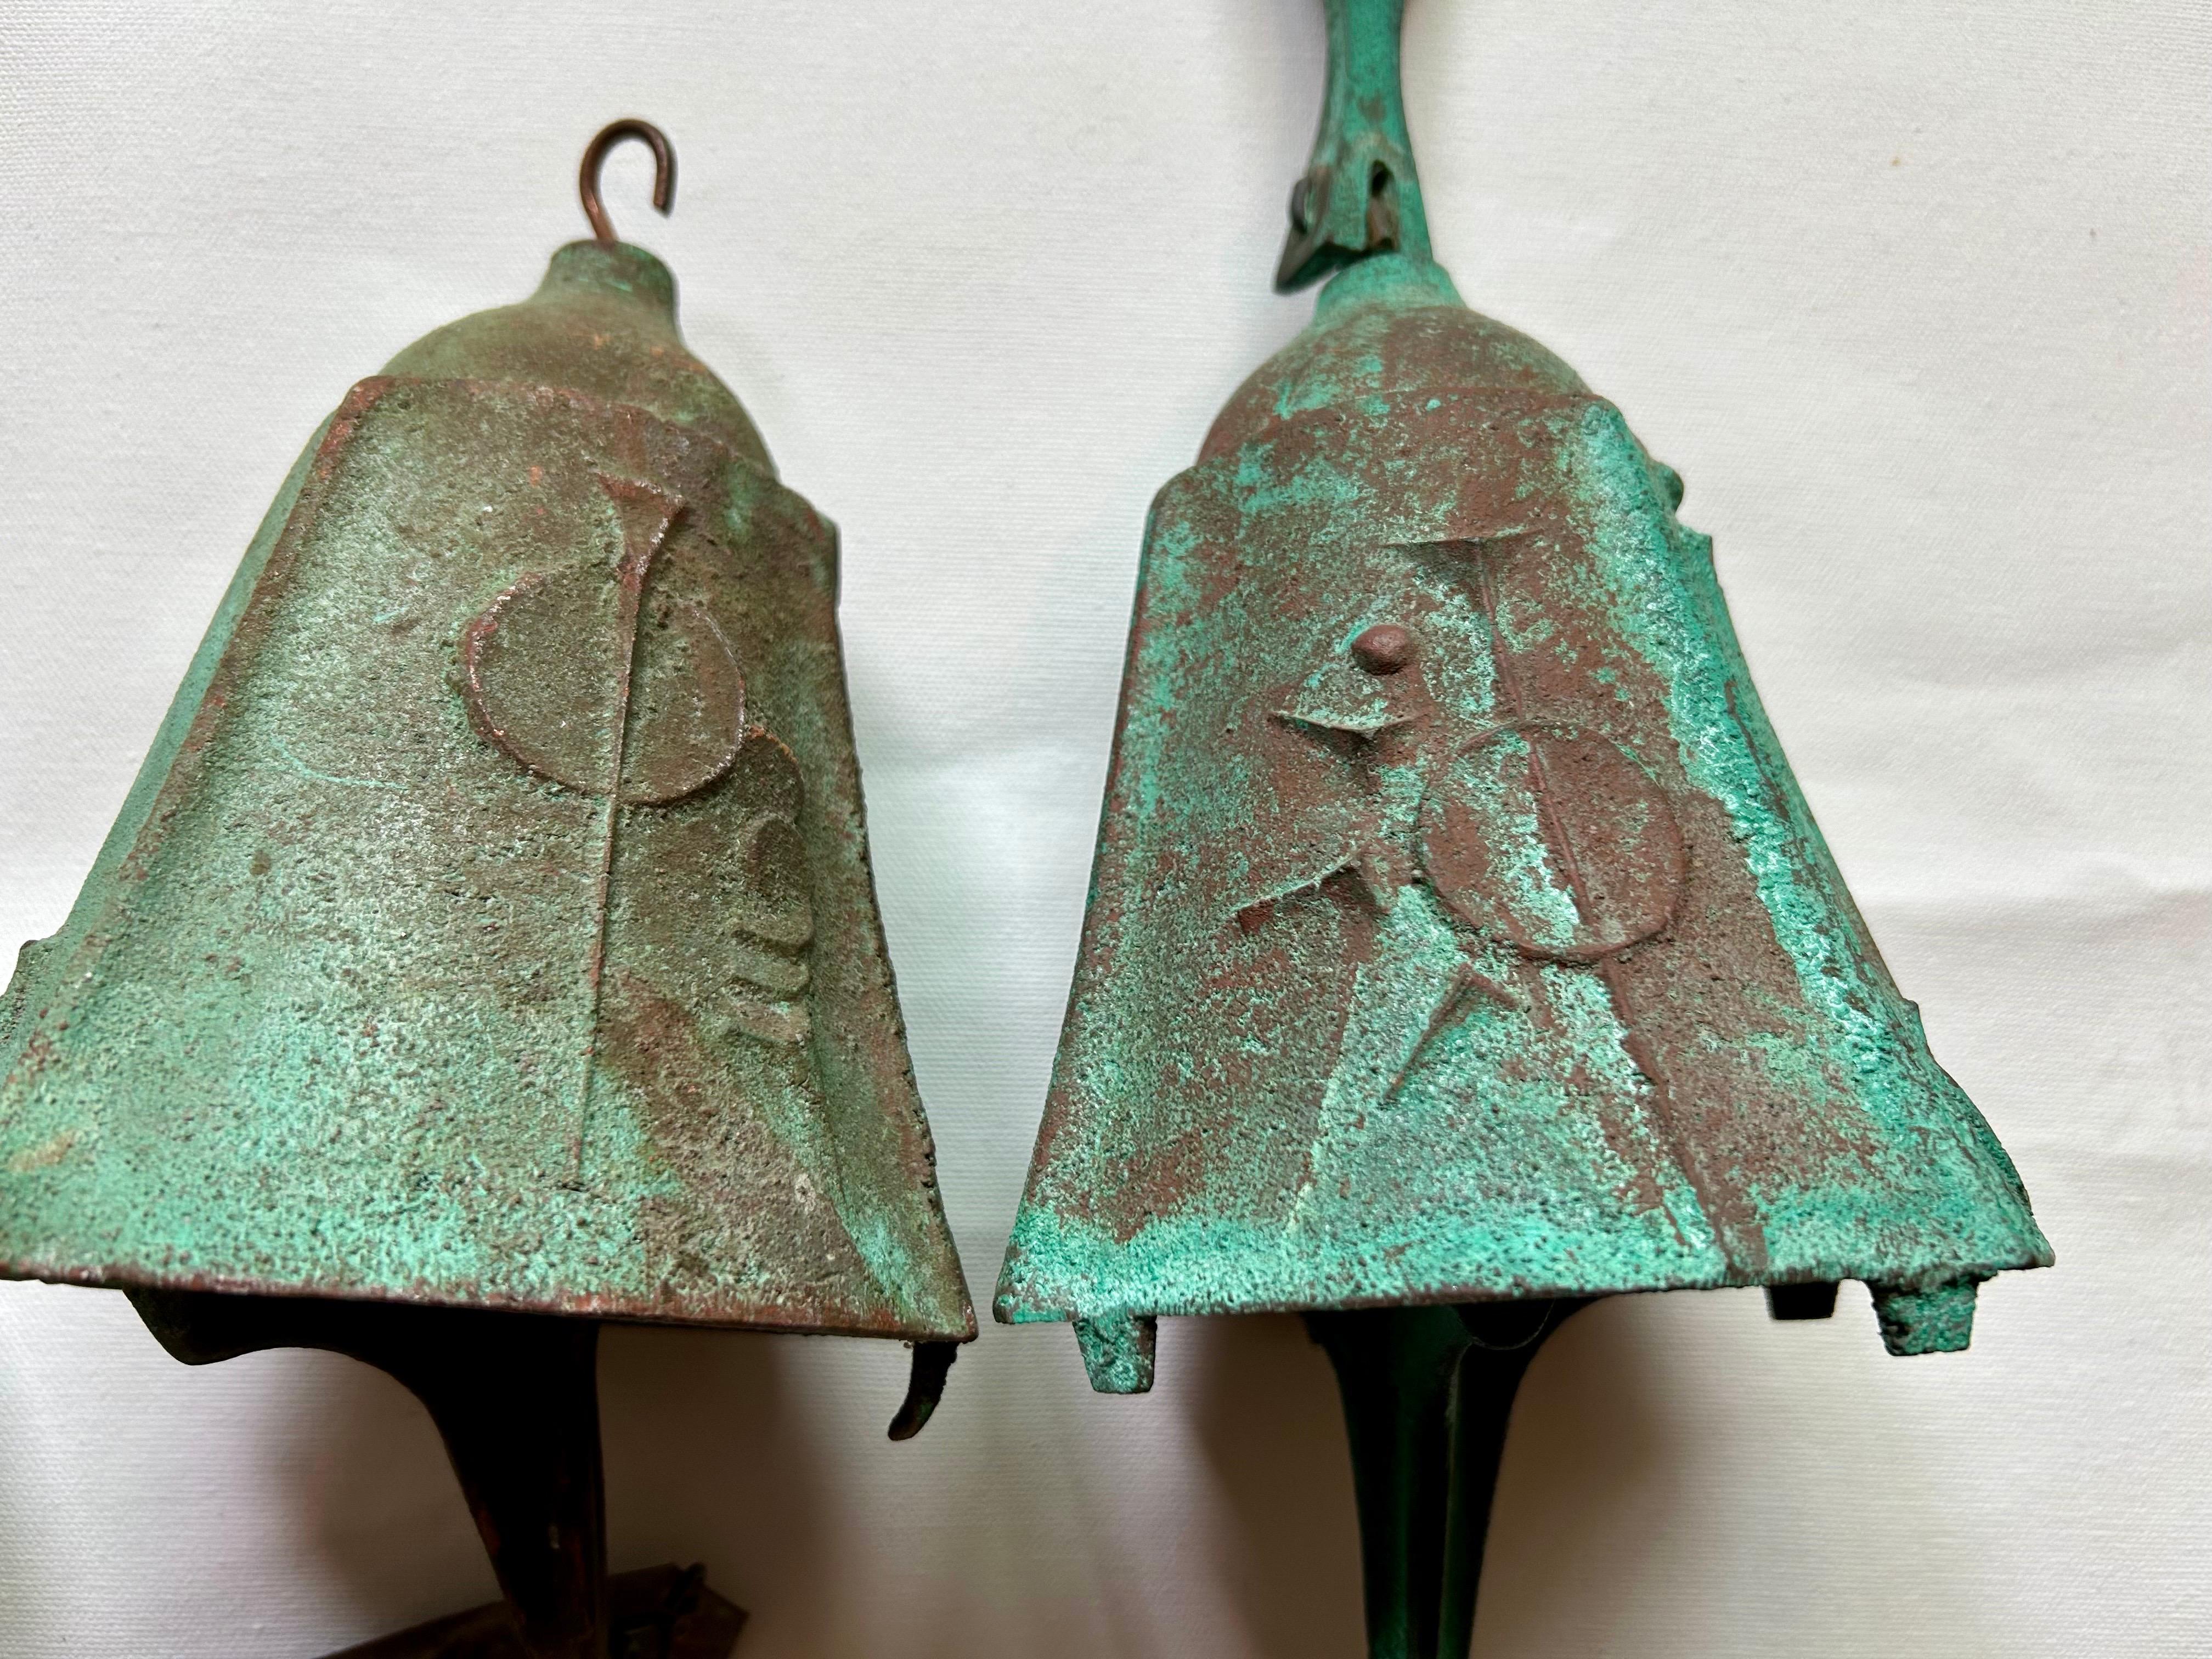 Bel ensemble de cloches en bronze avec une merveilleuse patine vert-de-gris.
Il n'y en a pas deux identiques.
Fabriqué dans l'usine de bronze Arcosanti en Arizona.
Ils ont un son musical agréable.
Il manque le bras de suspension à l'un d'entre eux.